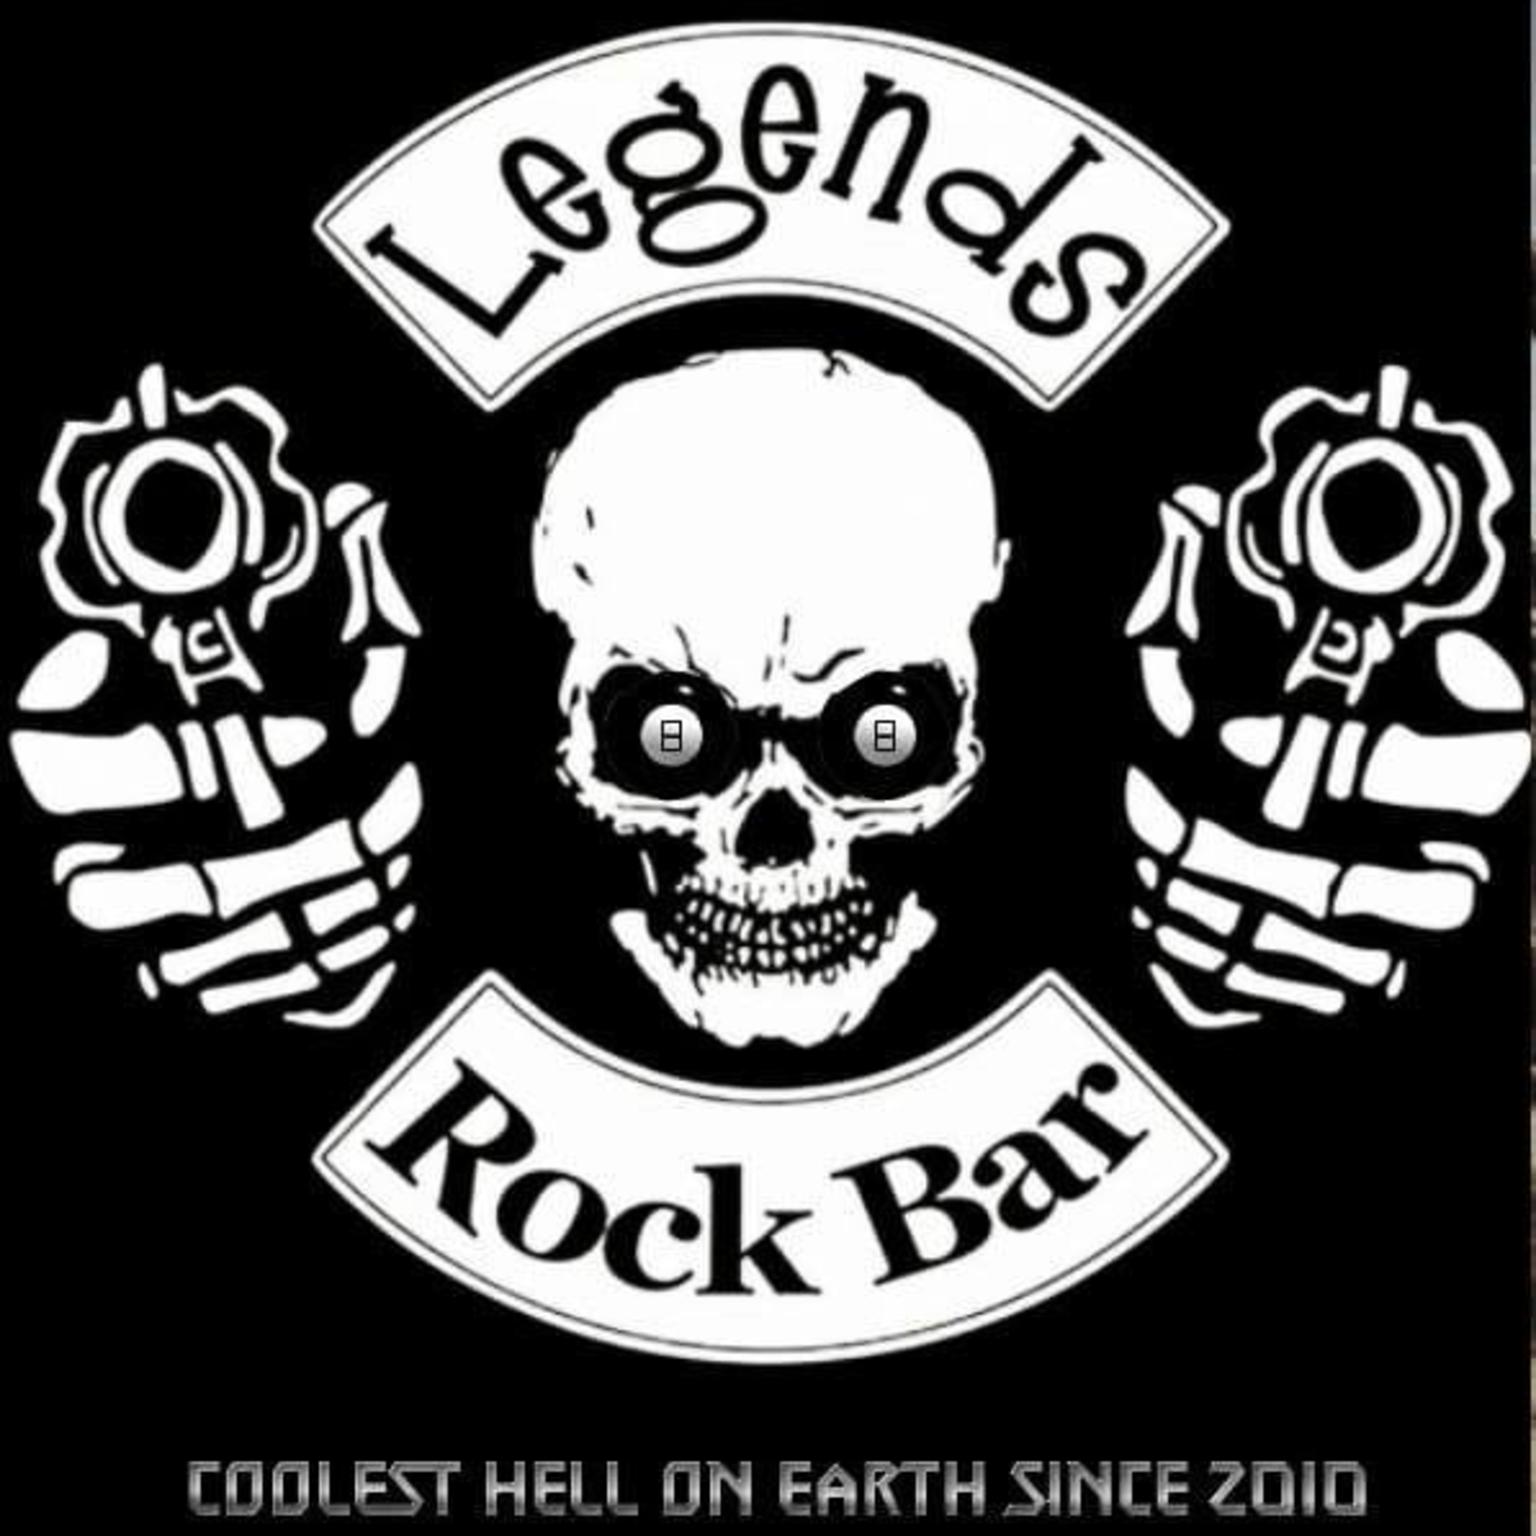 Legends Rock Bar